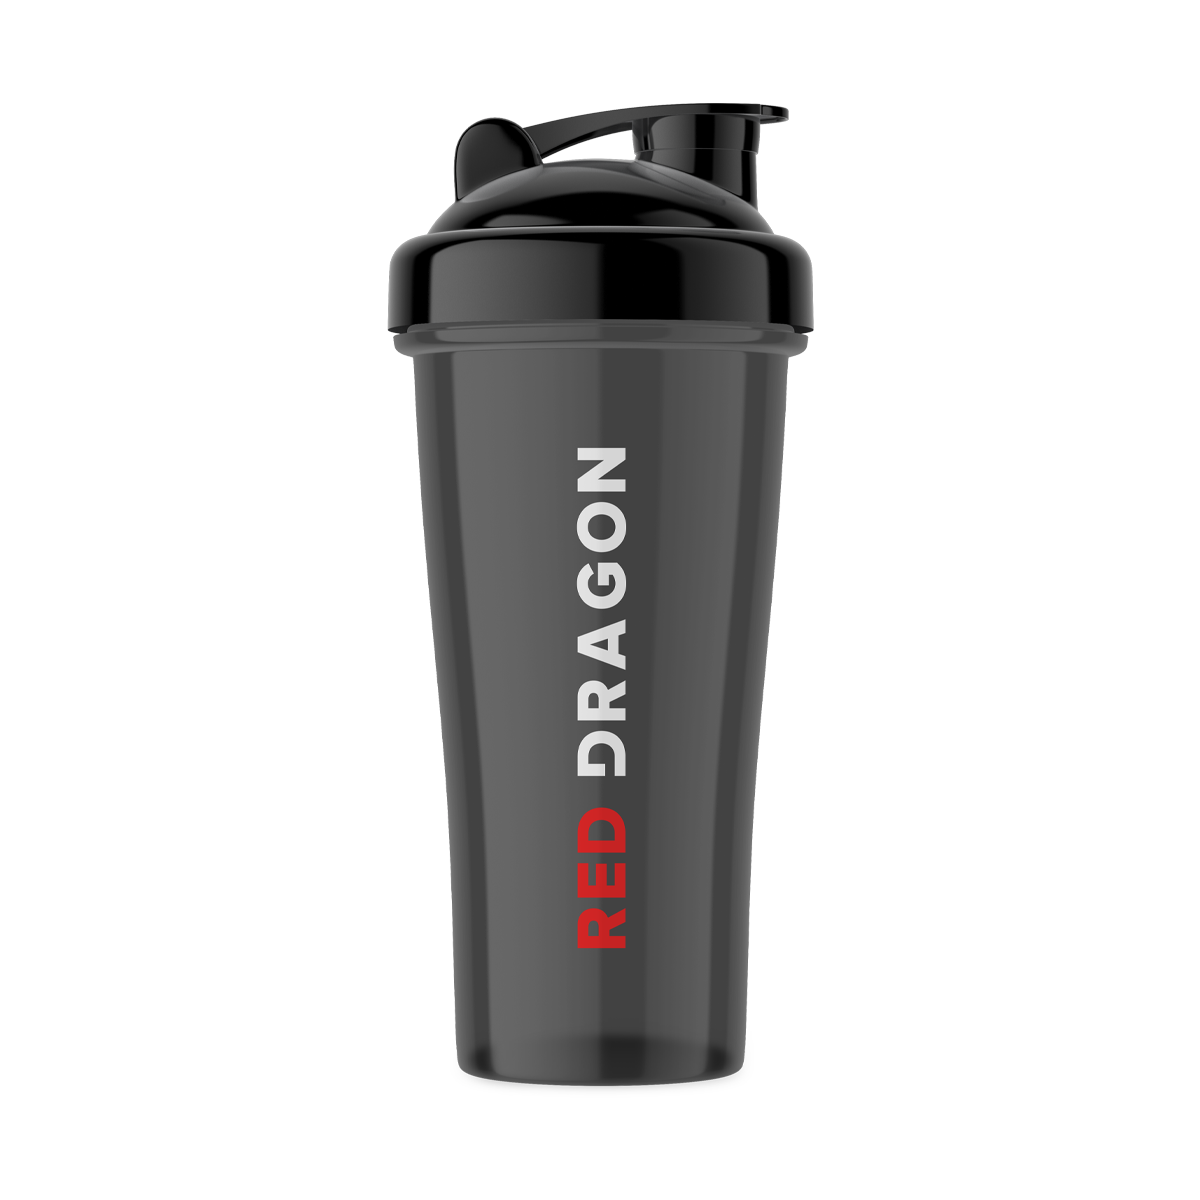 [RED DRAGON] Shaker Bottle - Black 700ml - Fitness Hero Brand new